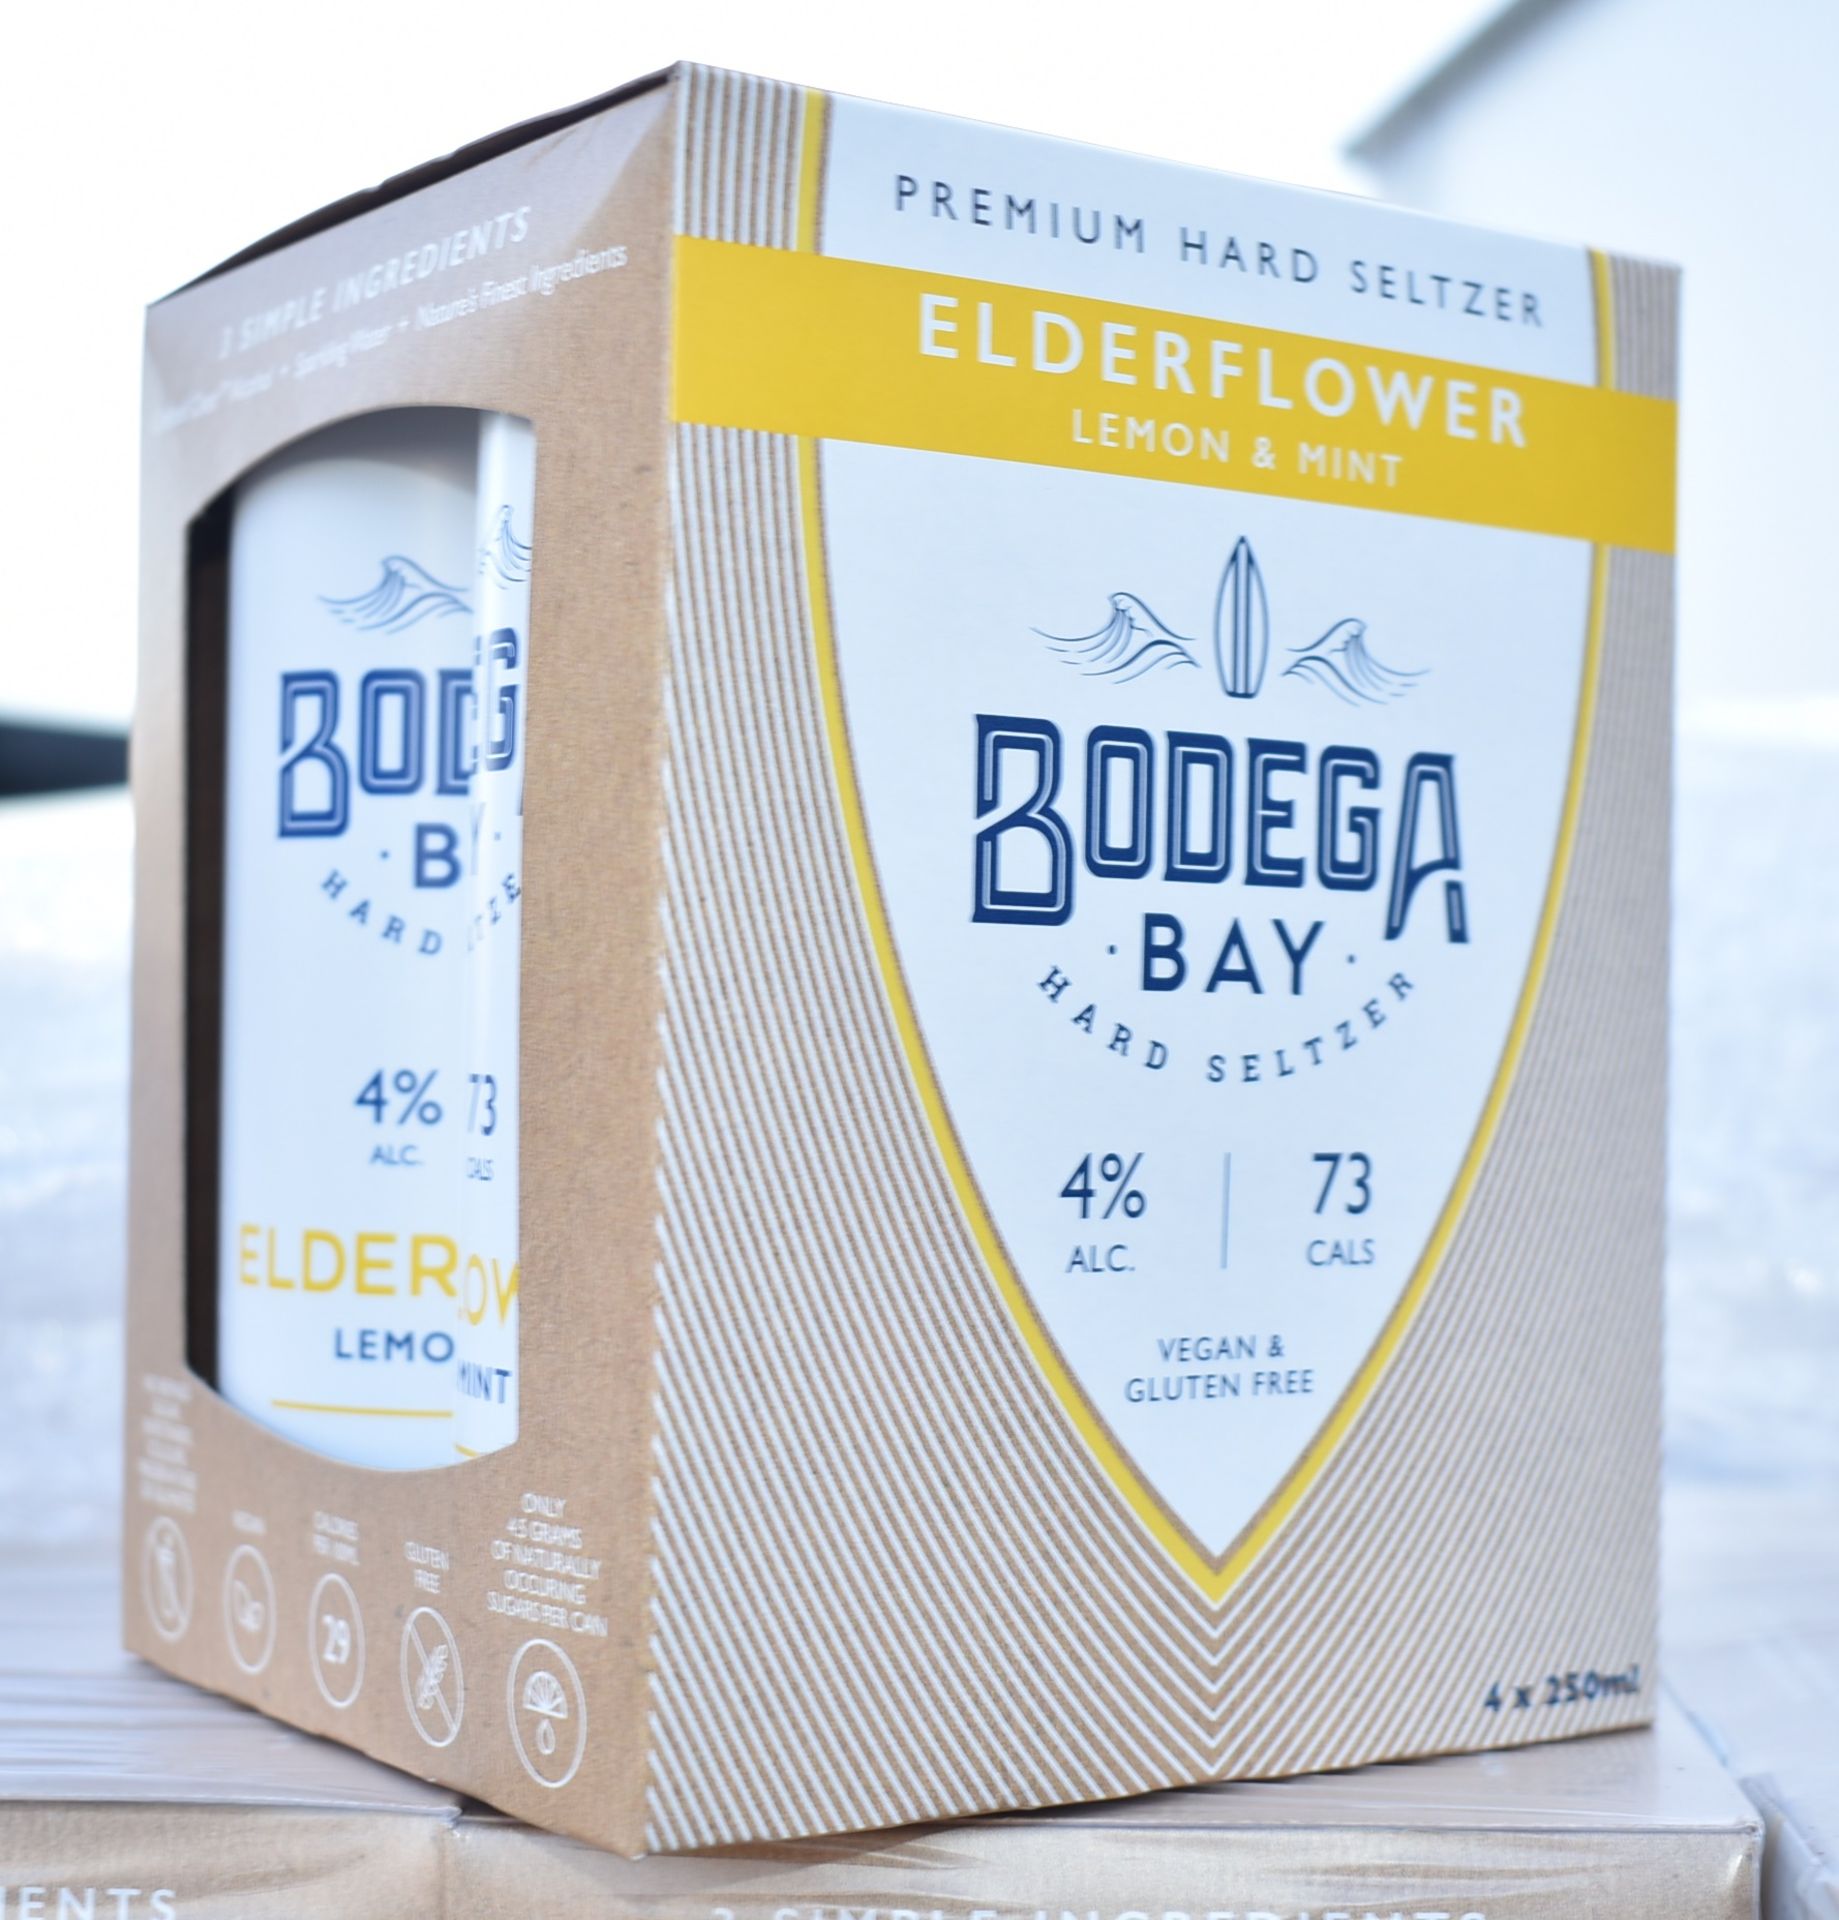 24 x Bodega Bay Hard Seltzer 250ml Alcoholic Sparkling Water Drinks - Elderflower Lemon & Mint - - Image 9 of 10